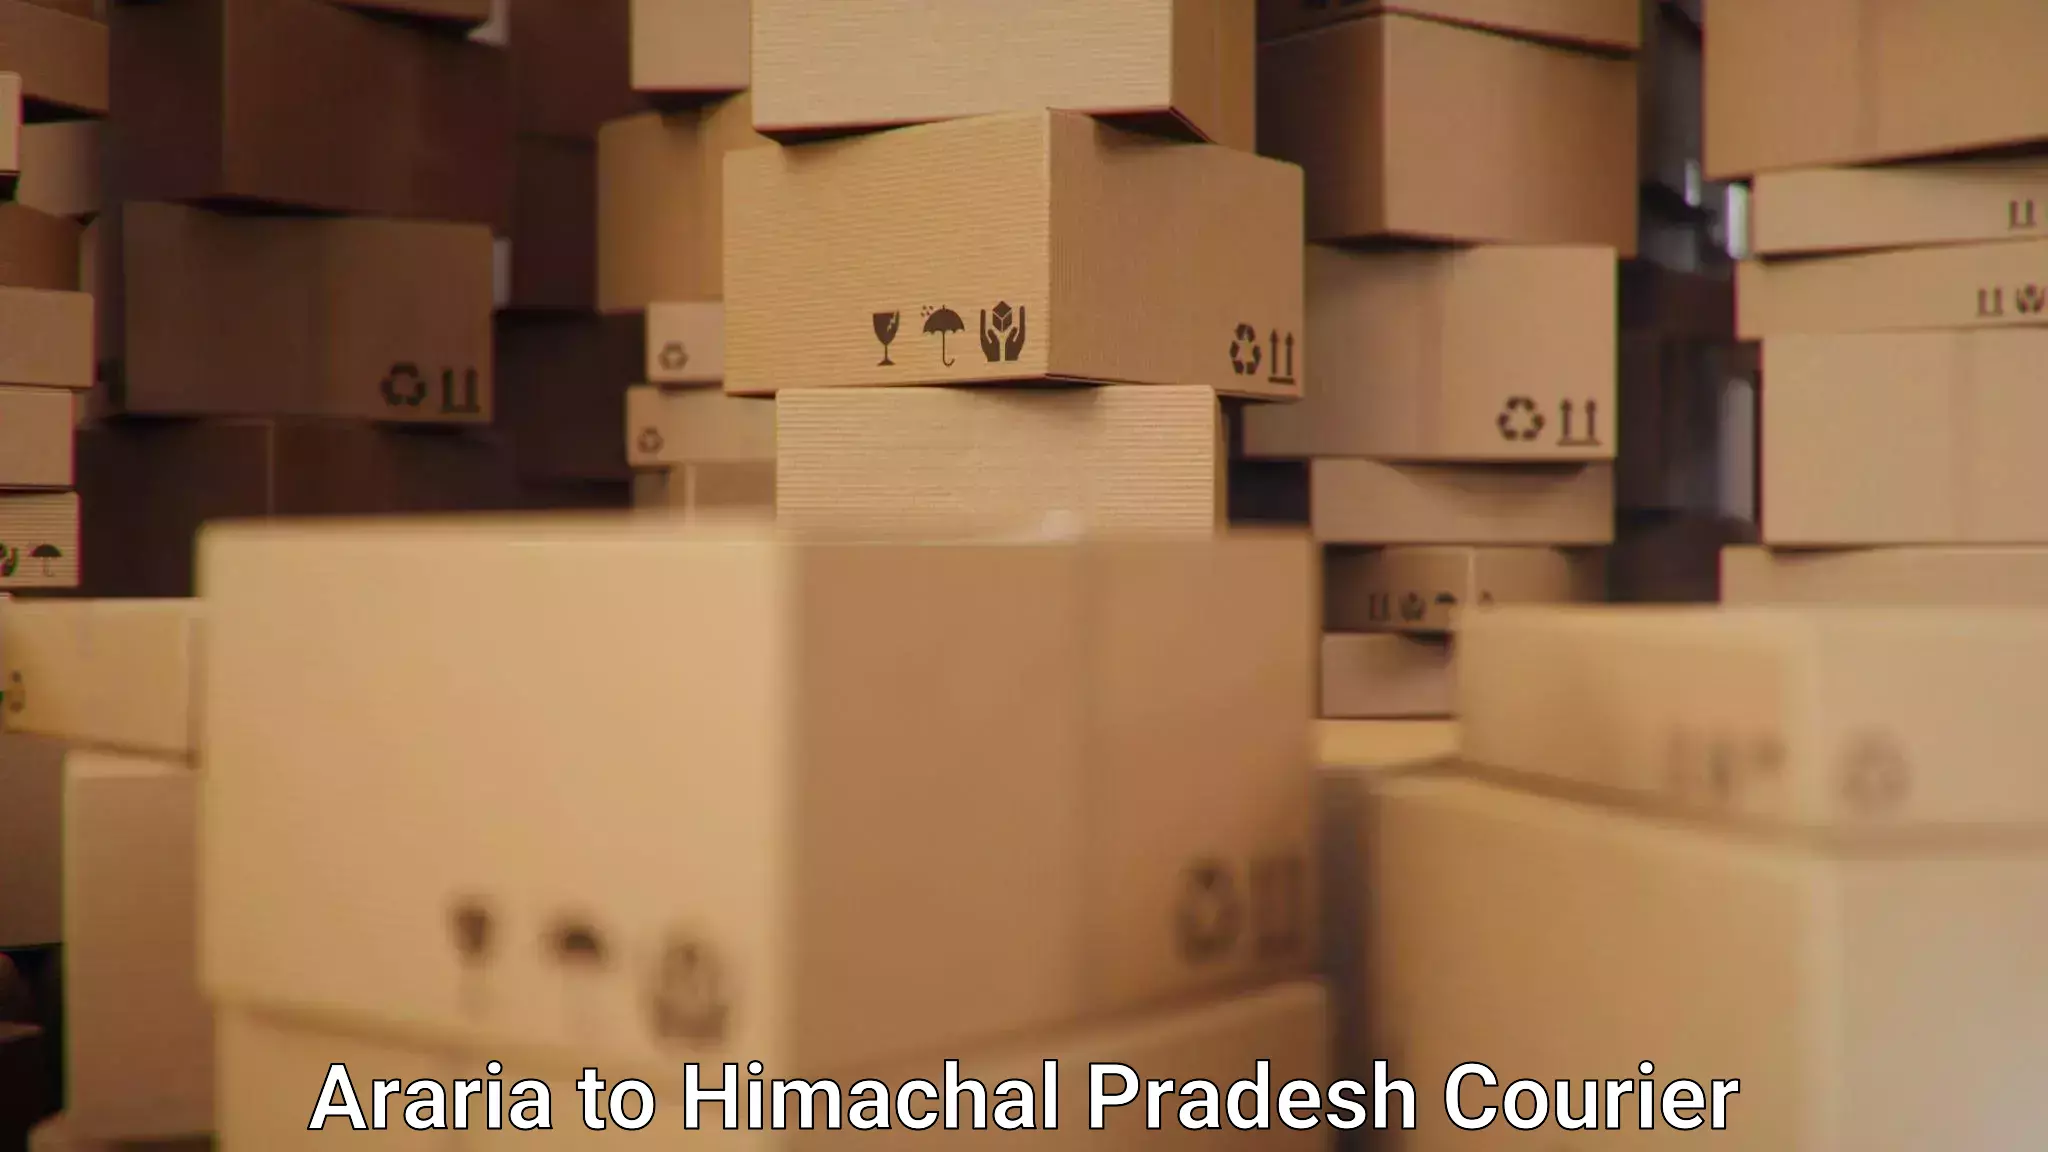 Efficient parcel delivery Araria to Himachal Pradesh